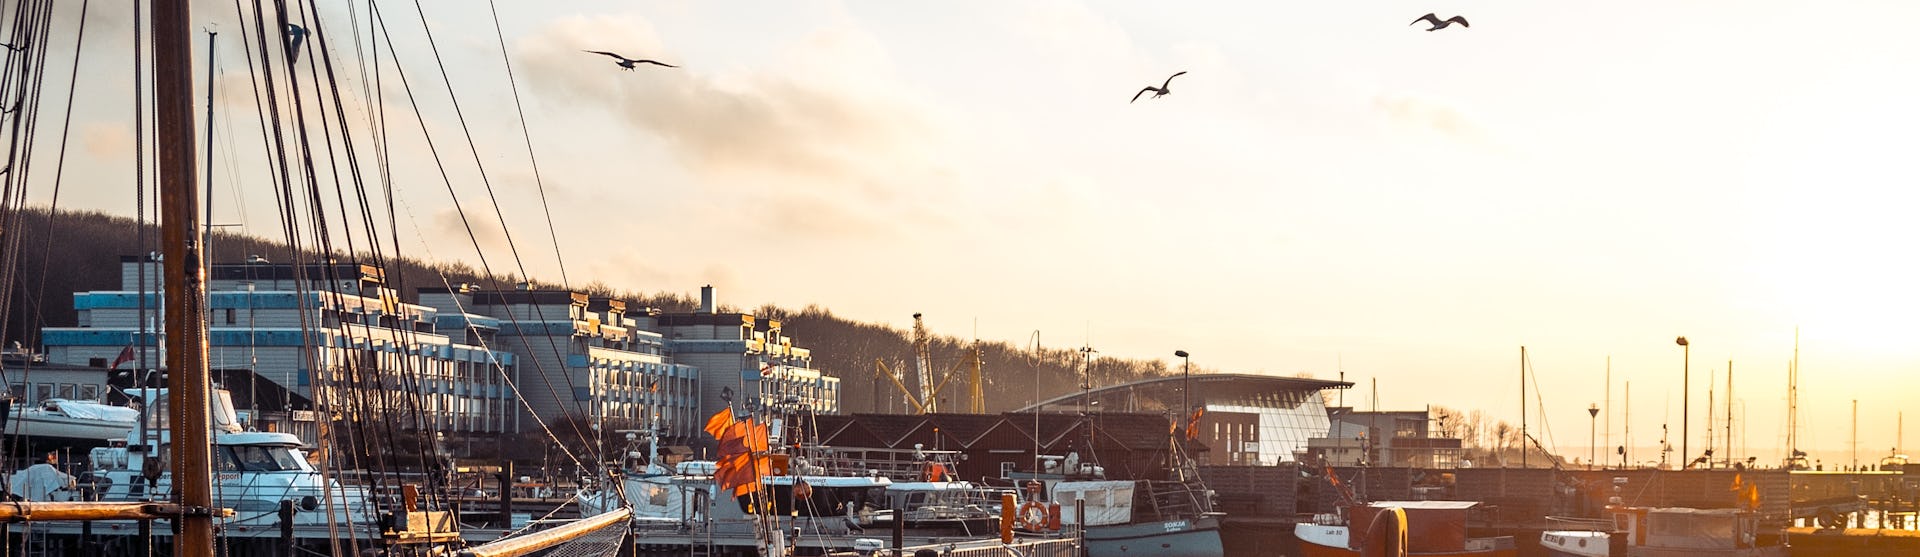 Kiels småbåtshamn med båtar och fåglar på himlen.